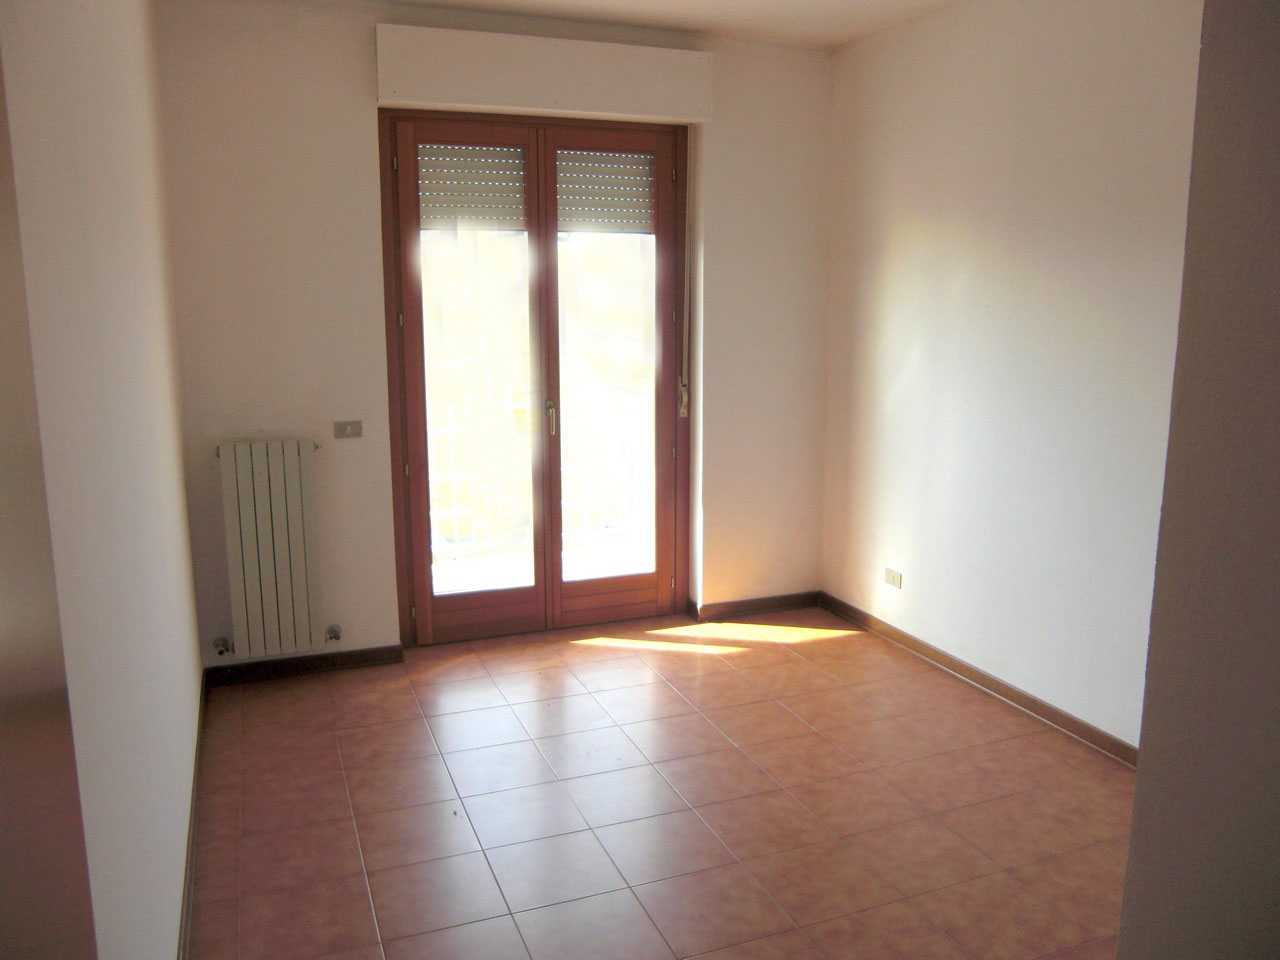 Appartamento in vendita a Campofilone, 5 locali, zona Località: Centro, prezzo € 140.000 | PortaleAgenzieImmobiliari.it